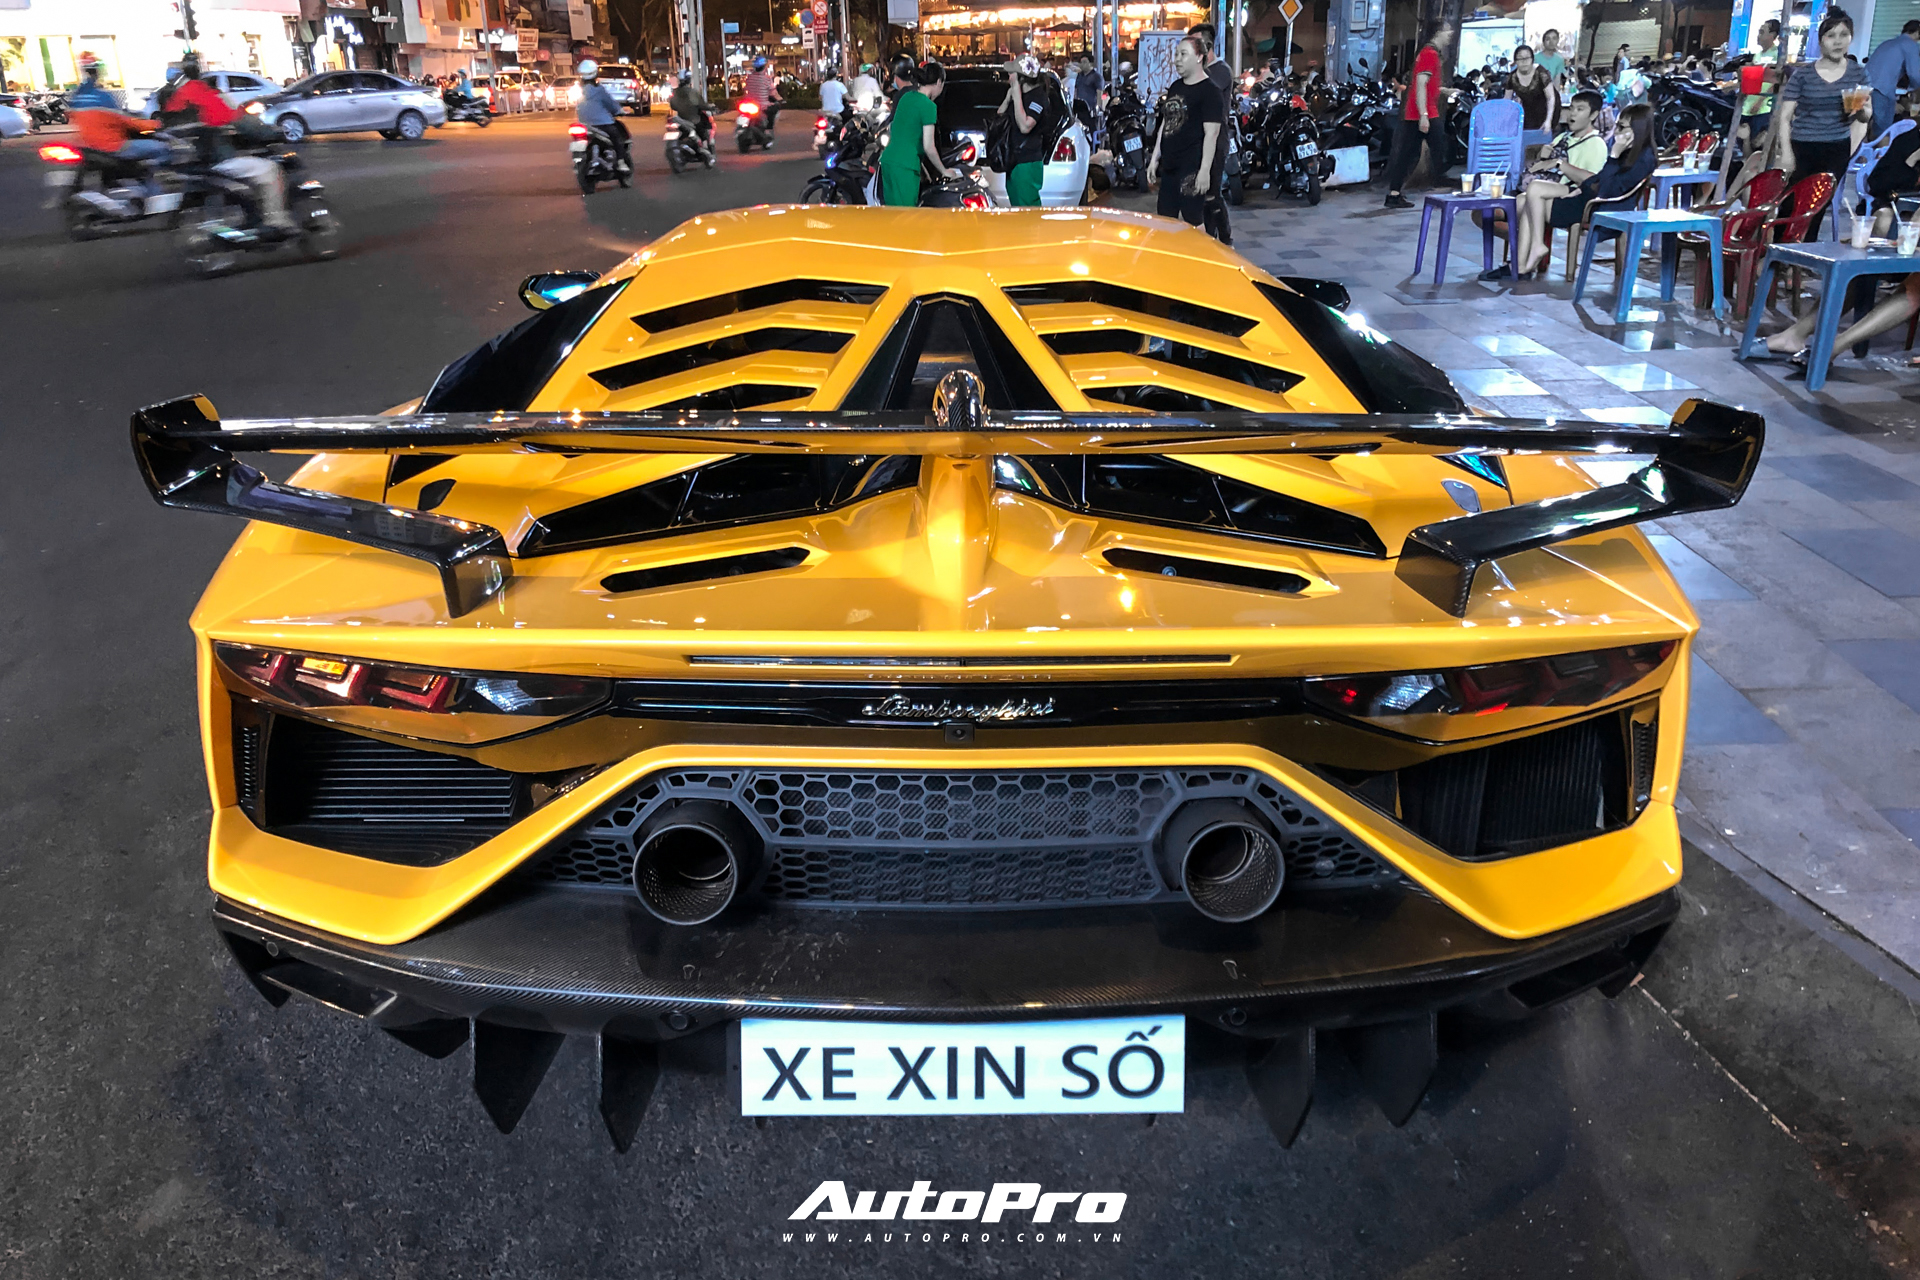 Cận cảnh Lamborghini Aventador SVJ thứ 2 tại Việt Nam: Nhiều chi tiết là điểm nhấn tạo nên sự khác biệt - Ảnh 10.